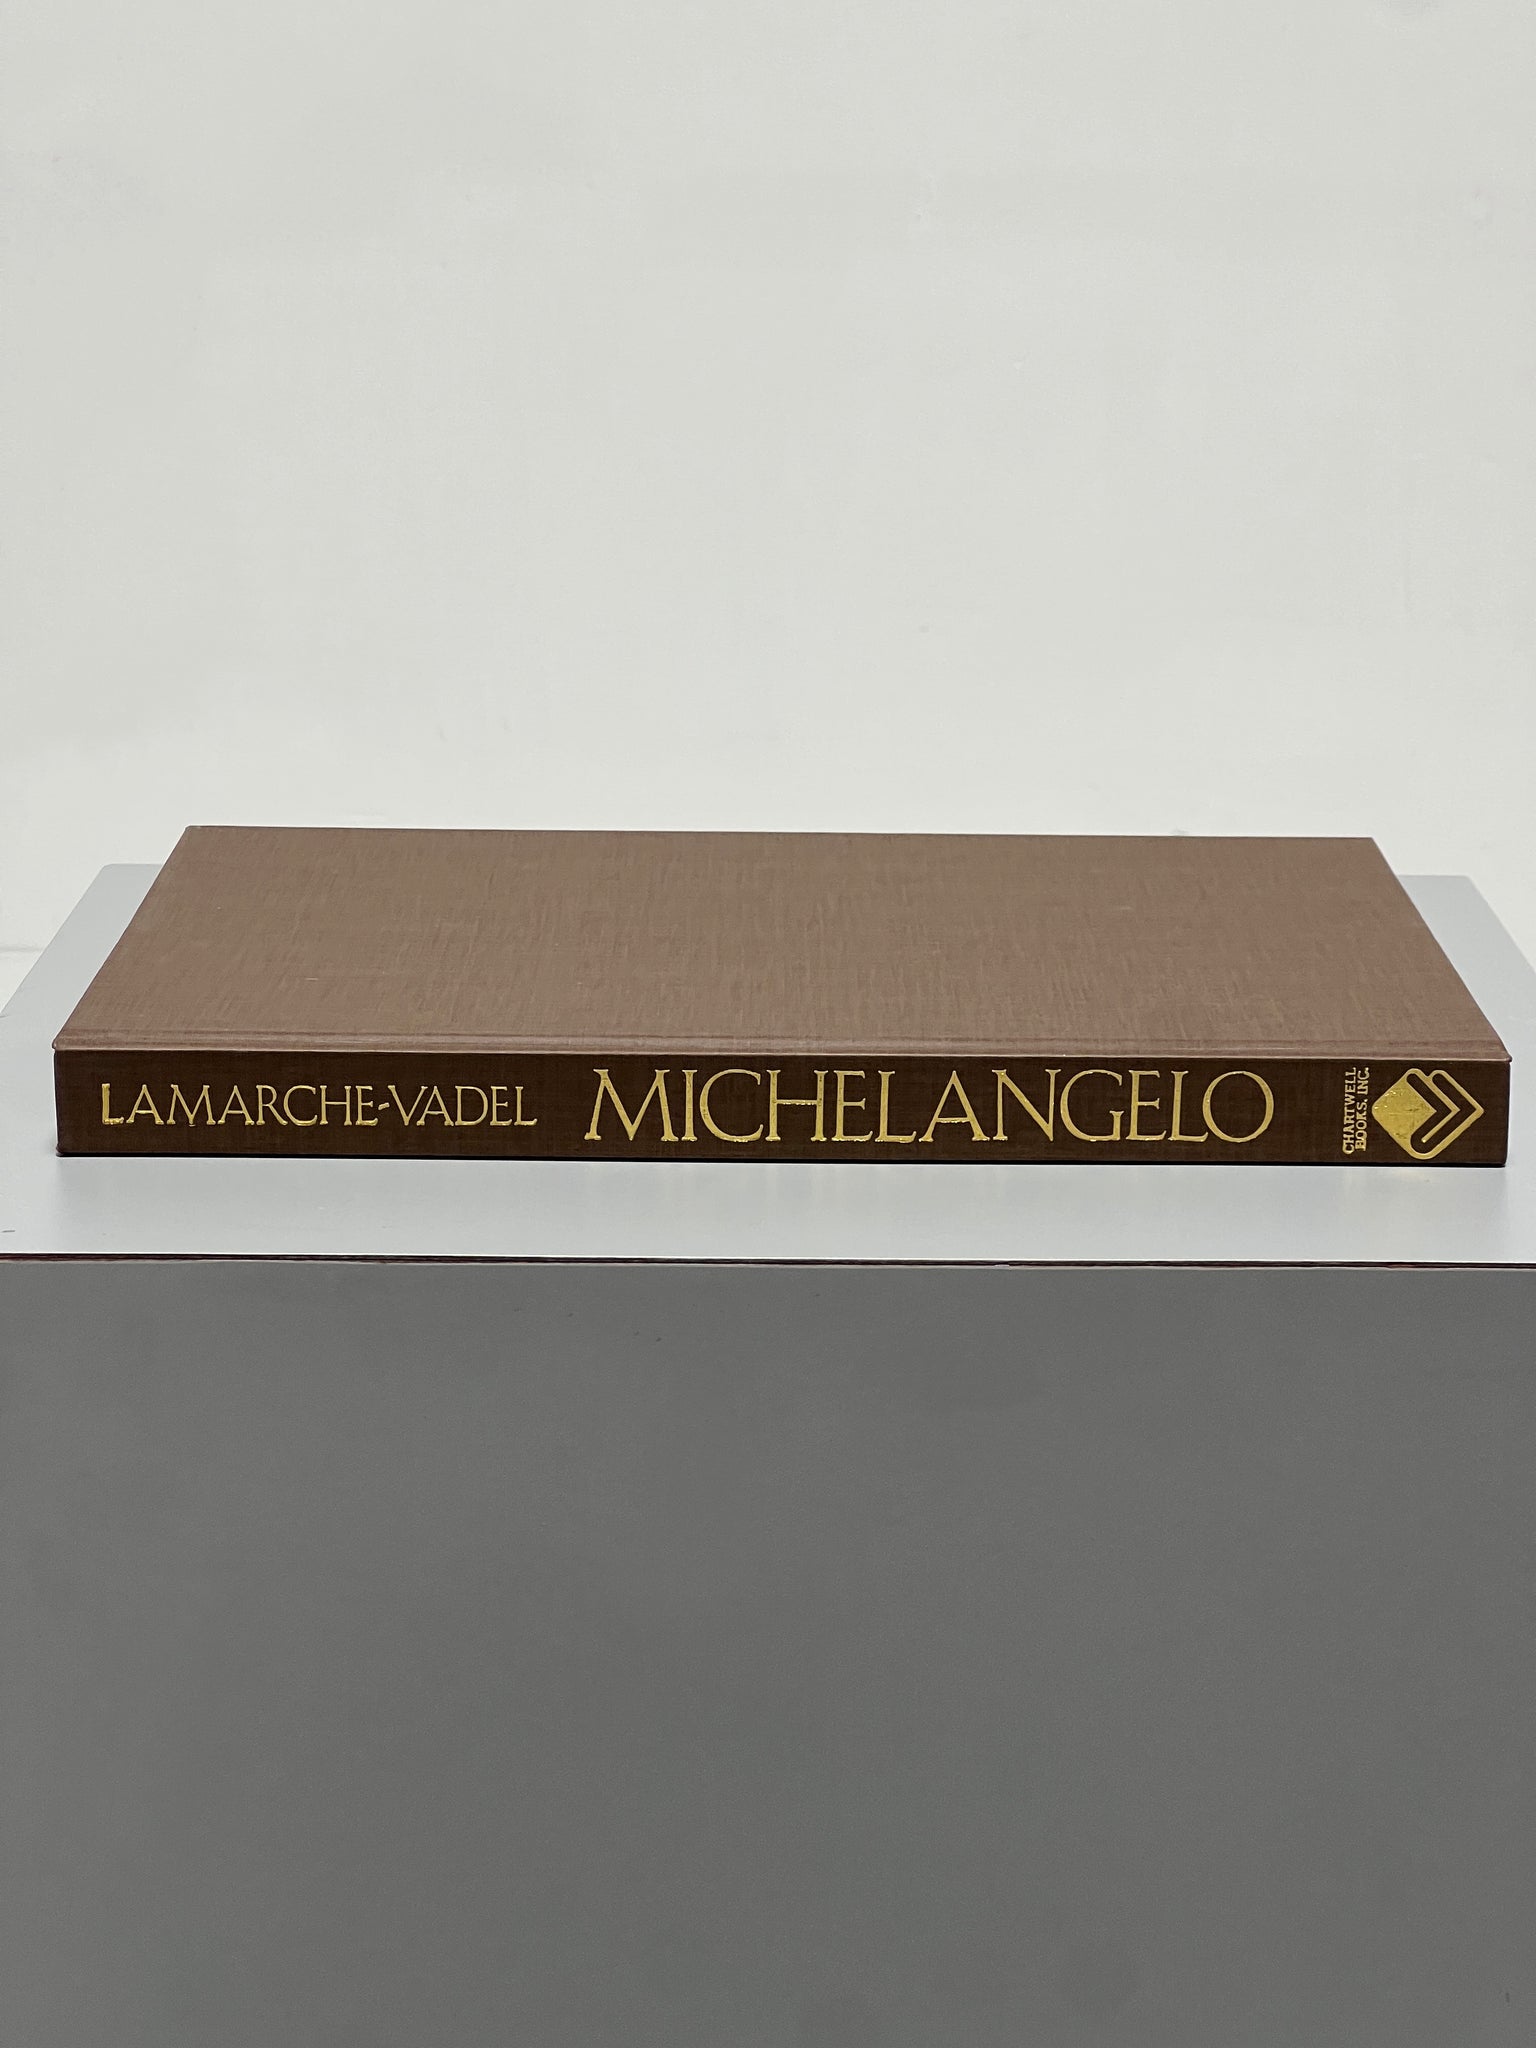 Michelangelo, 1986